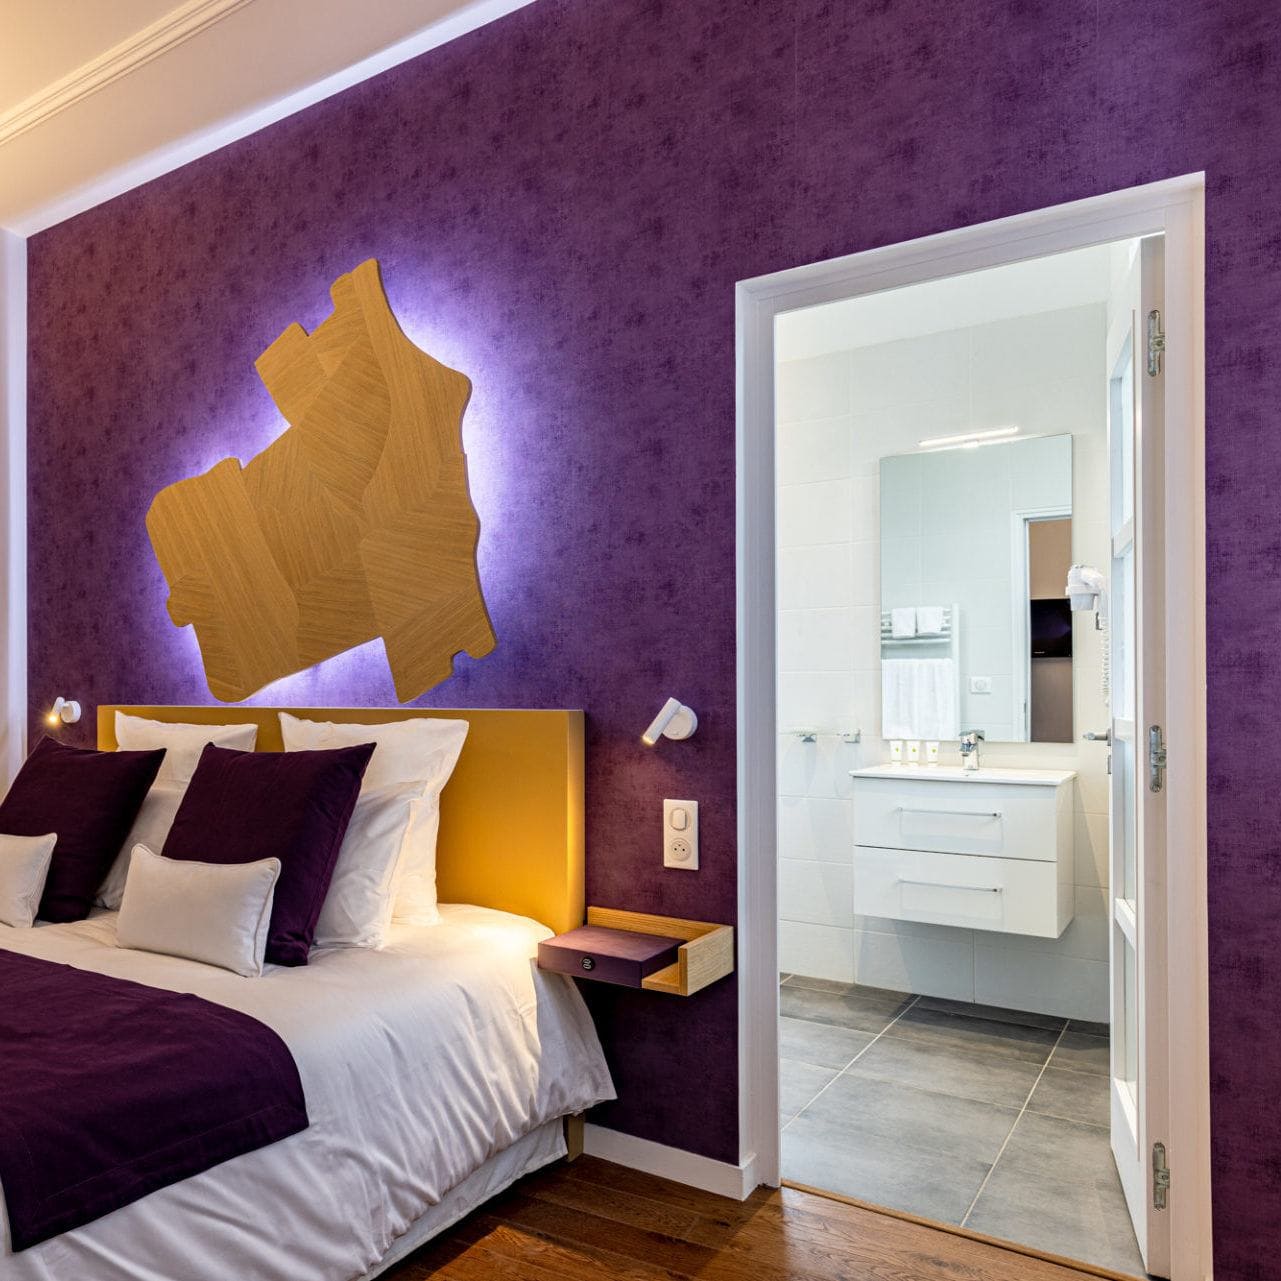 Charmante chambre avec lit deux places avec télévision et fauteuil, tons violets